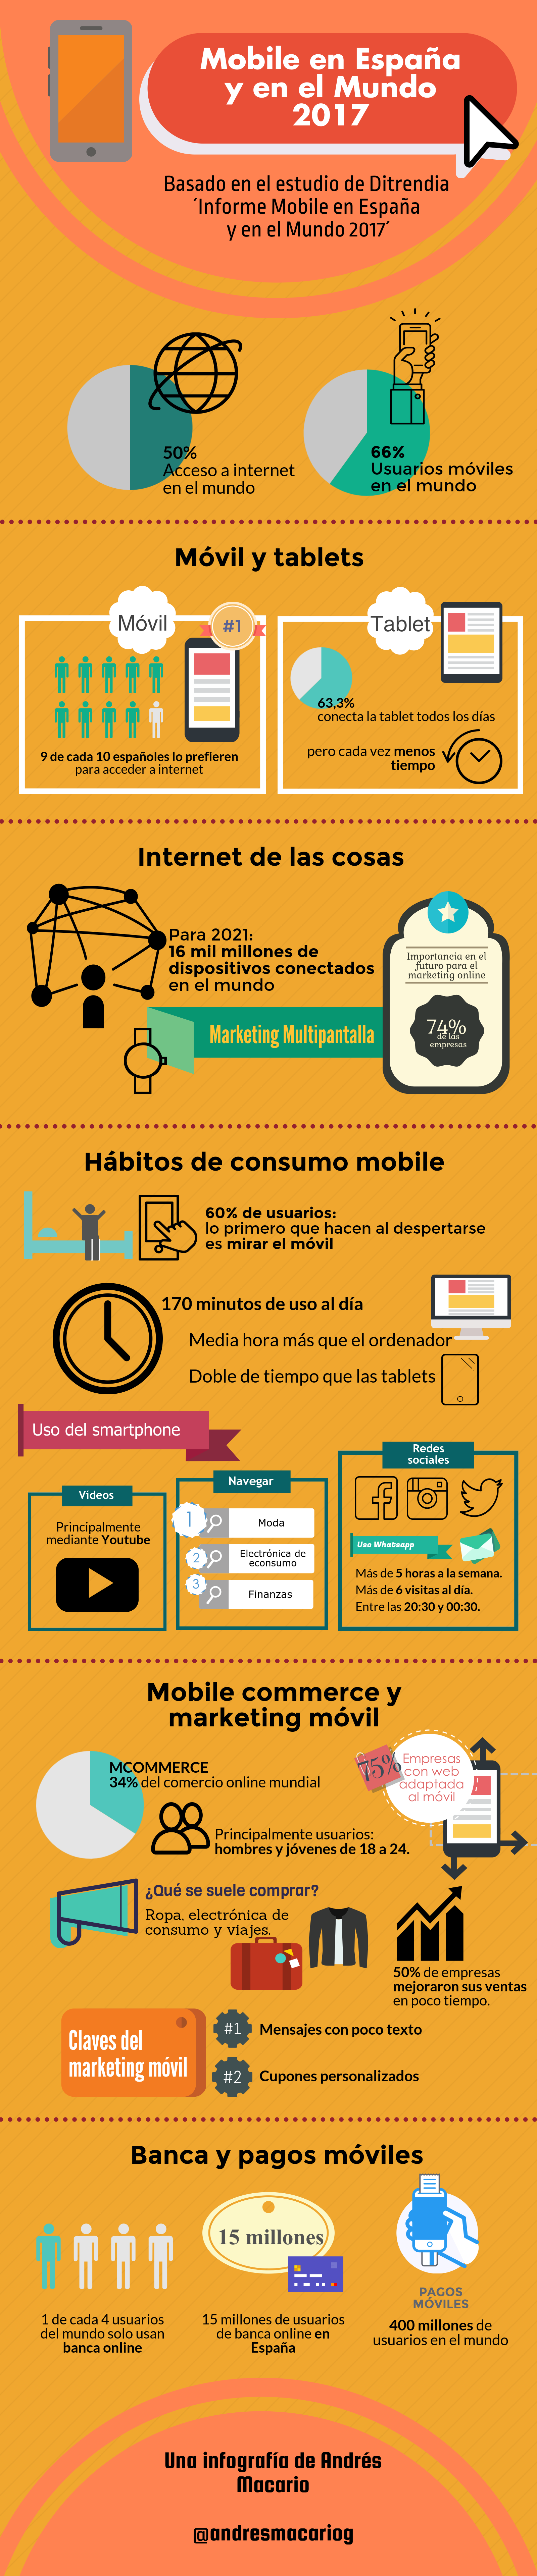 Mobile en España y en el Mundo 2017 - Infografia Andres Macario